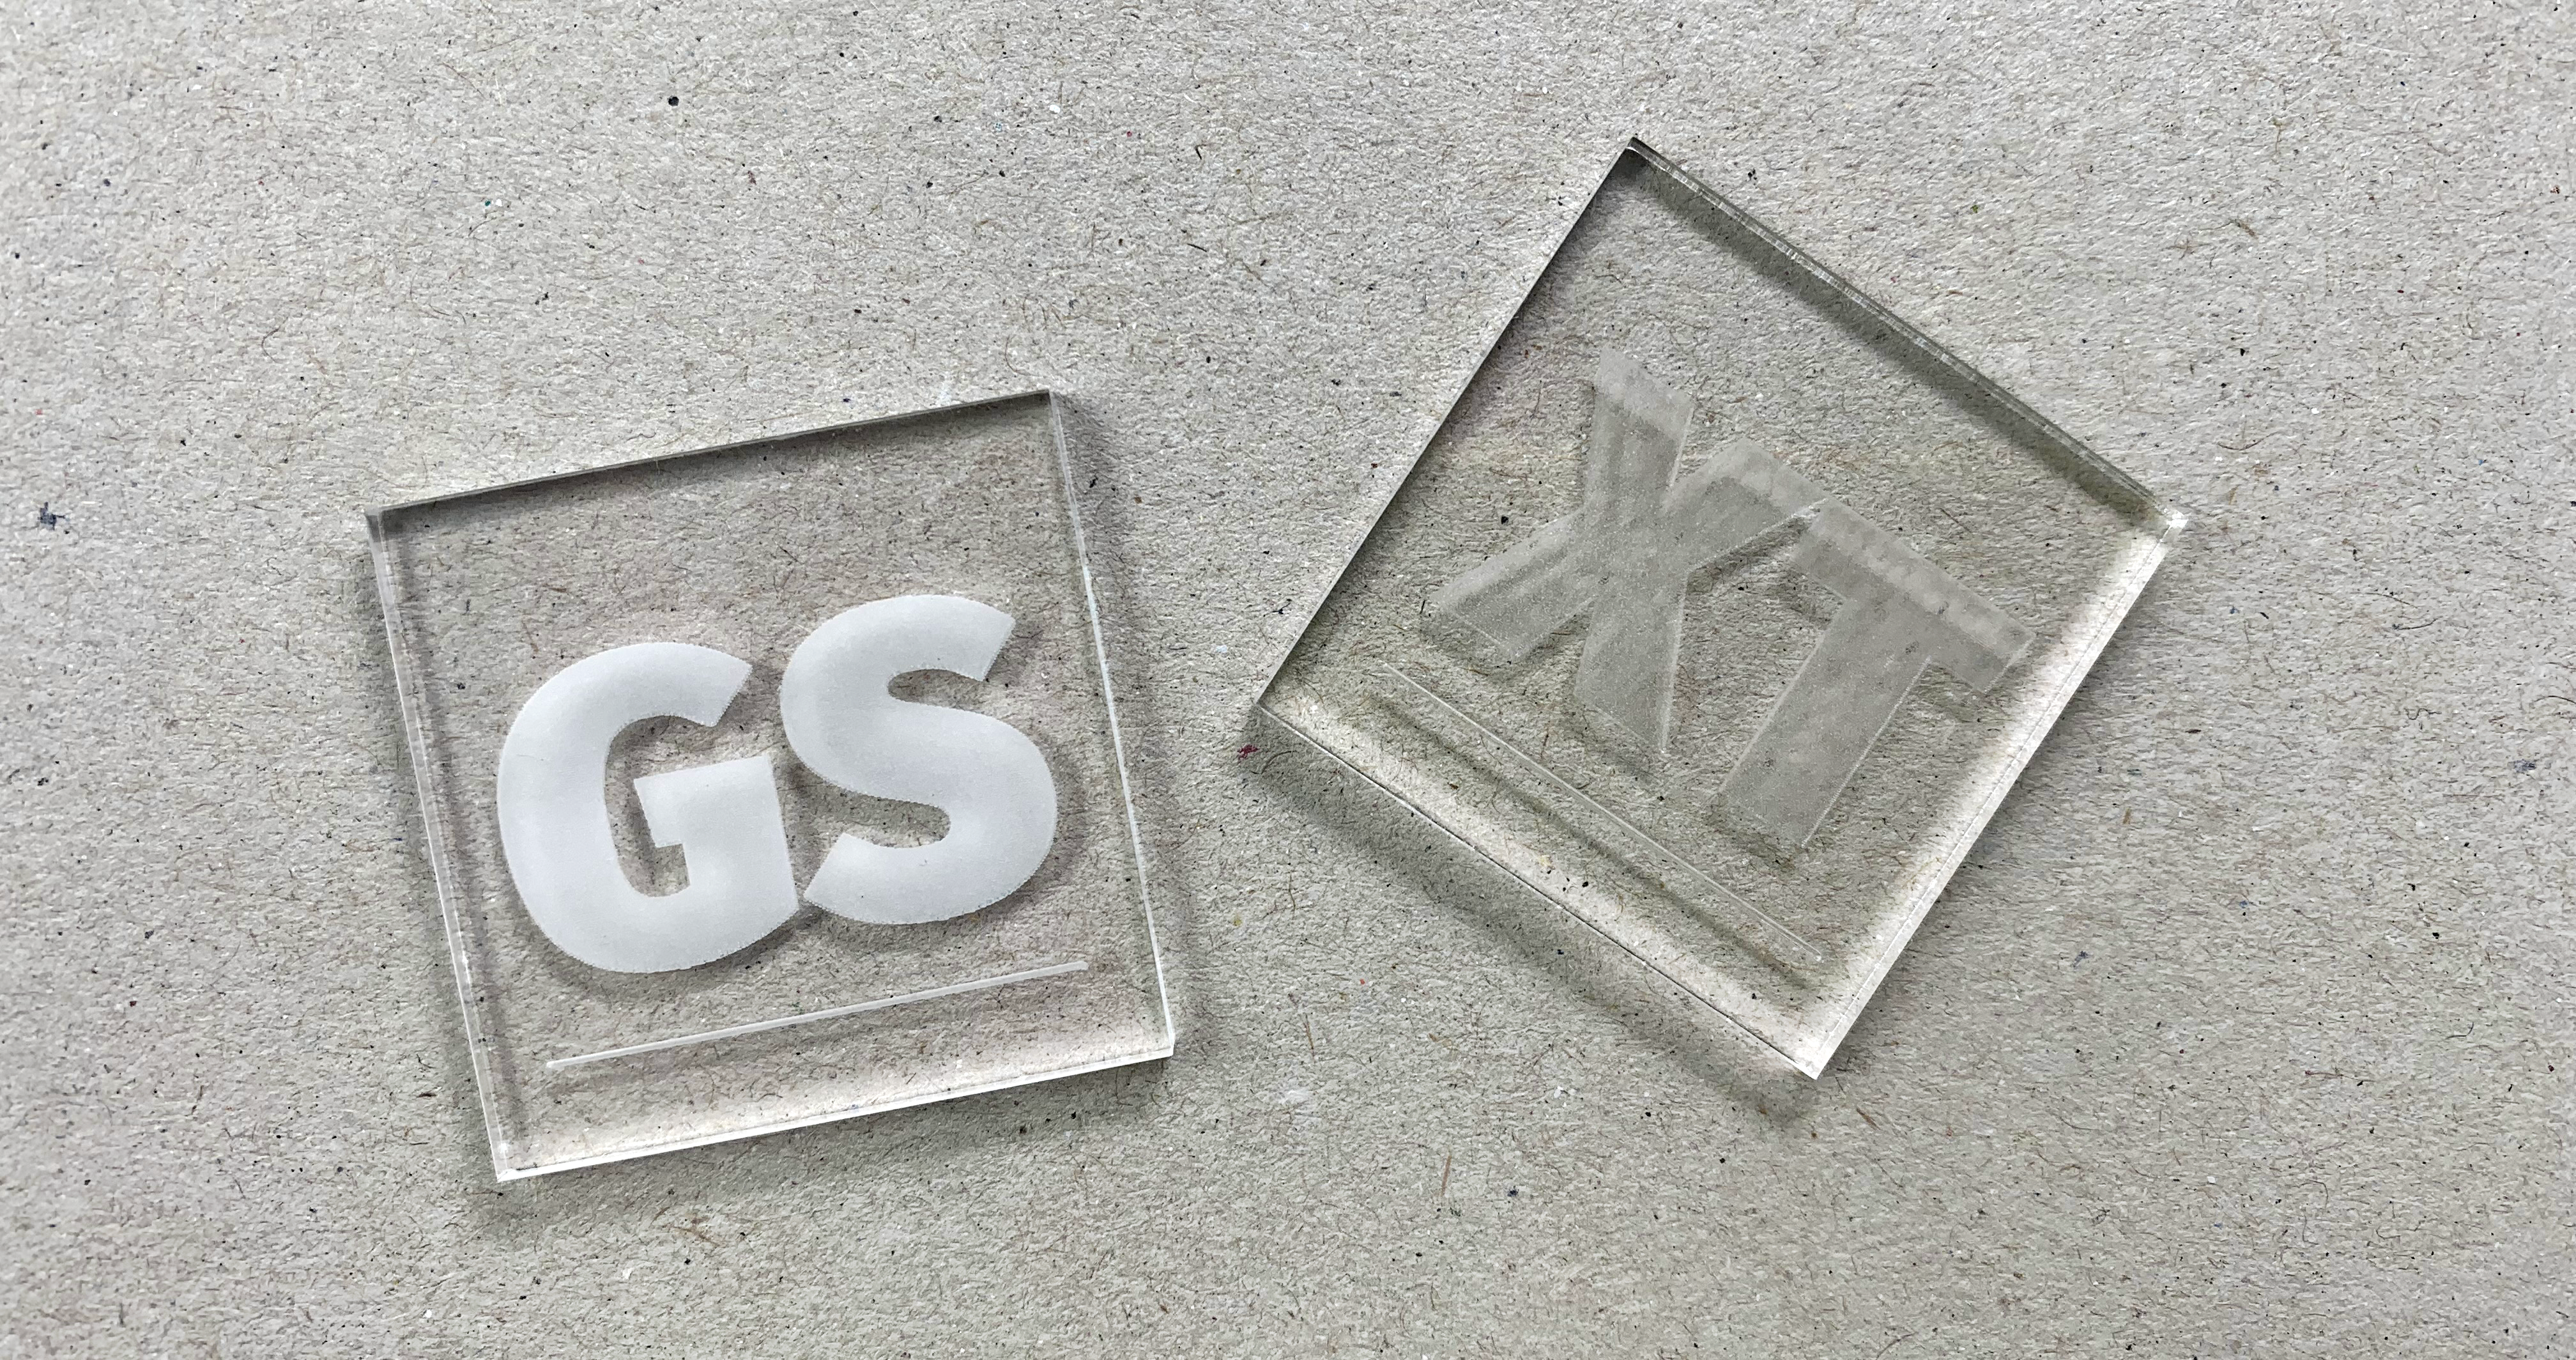 Twee kleine lasergesneden vierkantjes (ongeveer 2x2cm) van transparant acrylaat. De linker is van gegoten (GS) acrylaat en de rechter is van geëxtrudeerd (XT) acrylaat. Er is op beiden de letters GS en XT gegraveerd met laser. De gravure van GS is mat wit en hoog contrast, de gravure van XT is minder contrastrijk. Dit laat het verschil in graveerkwaliteit zien tussen deze twee verschillend geproduceerde materialen.